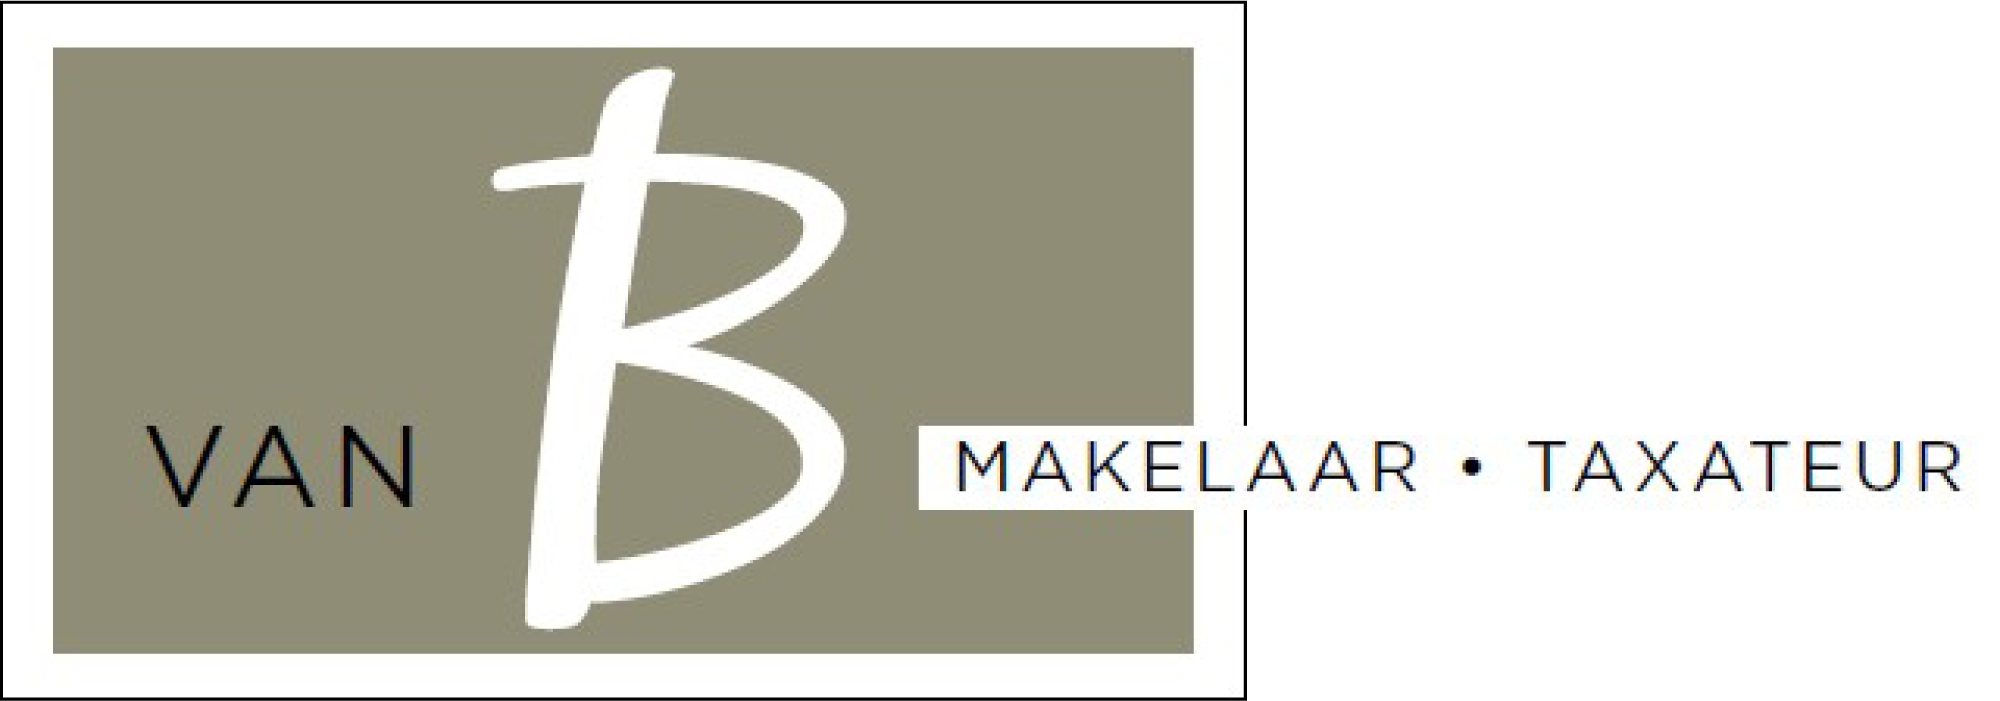 Van B Makelaar - Taxateur - Utrecht